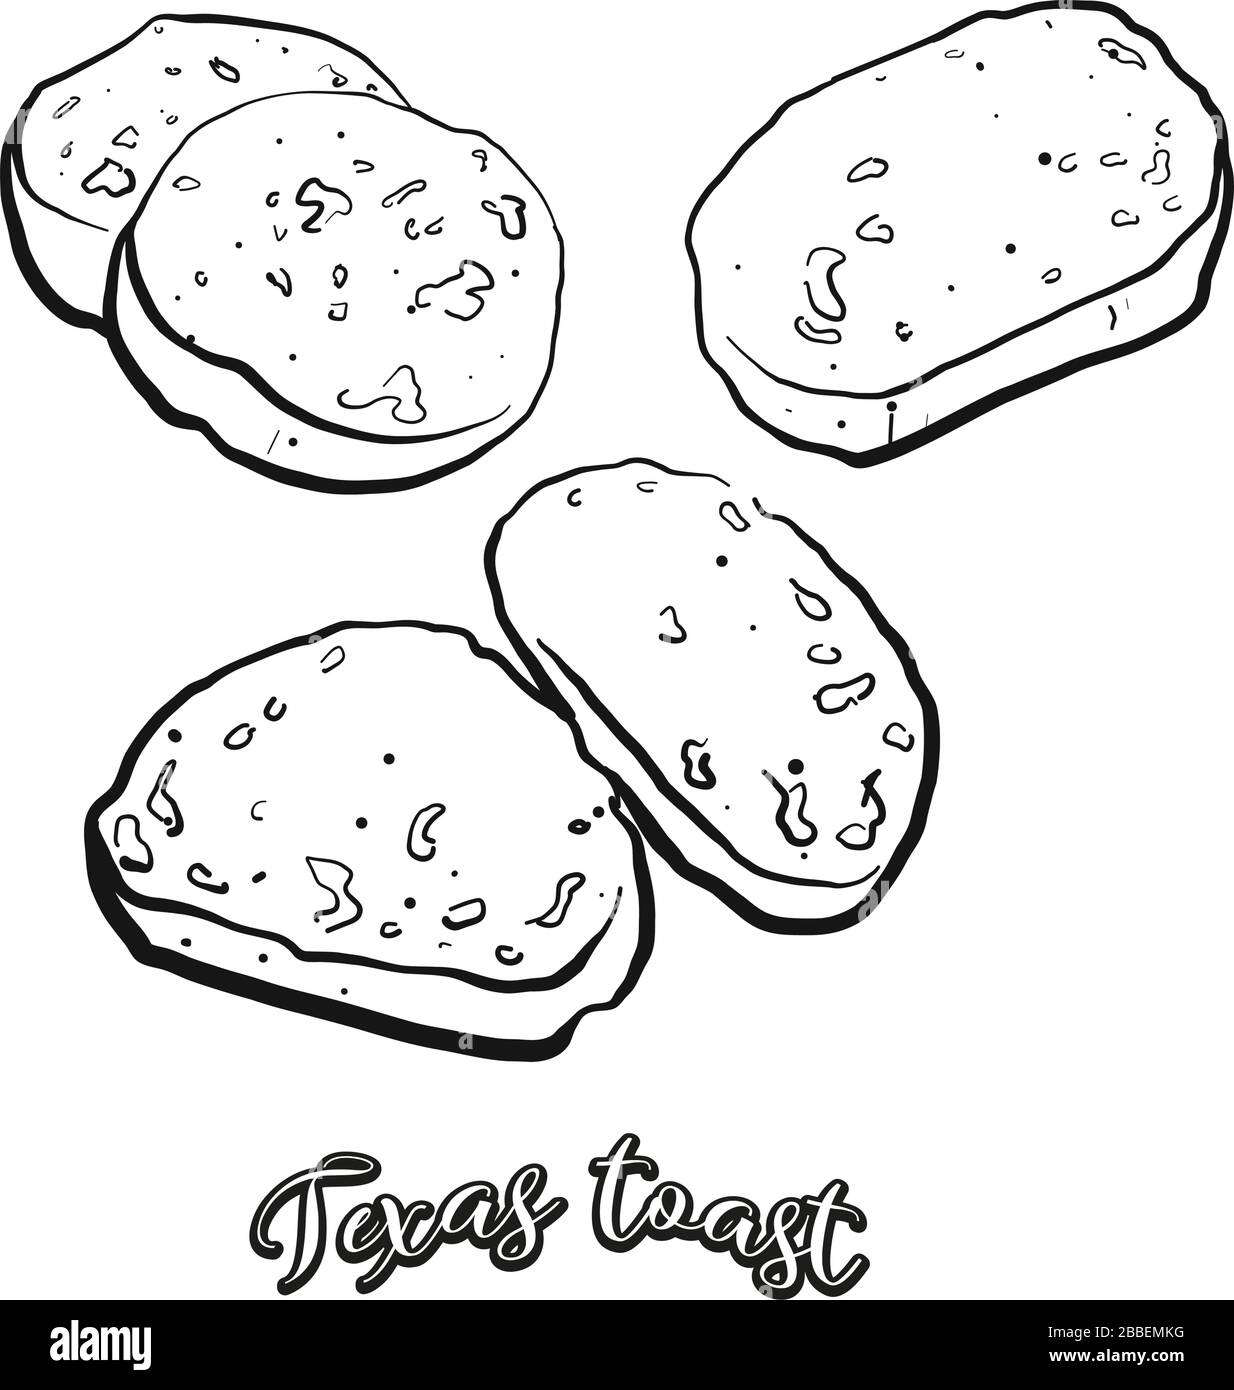 Texas toast alimentaire croquis séparé sur blanc. Dessin vectoriel de Toast, White, généralement connu aux États-Unis, Texas. Série d'illustrations alimentaires. Illustration de Vecteur